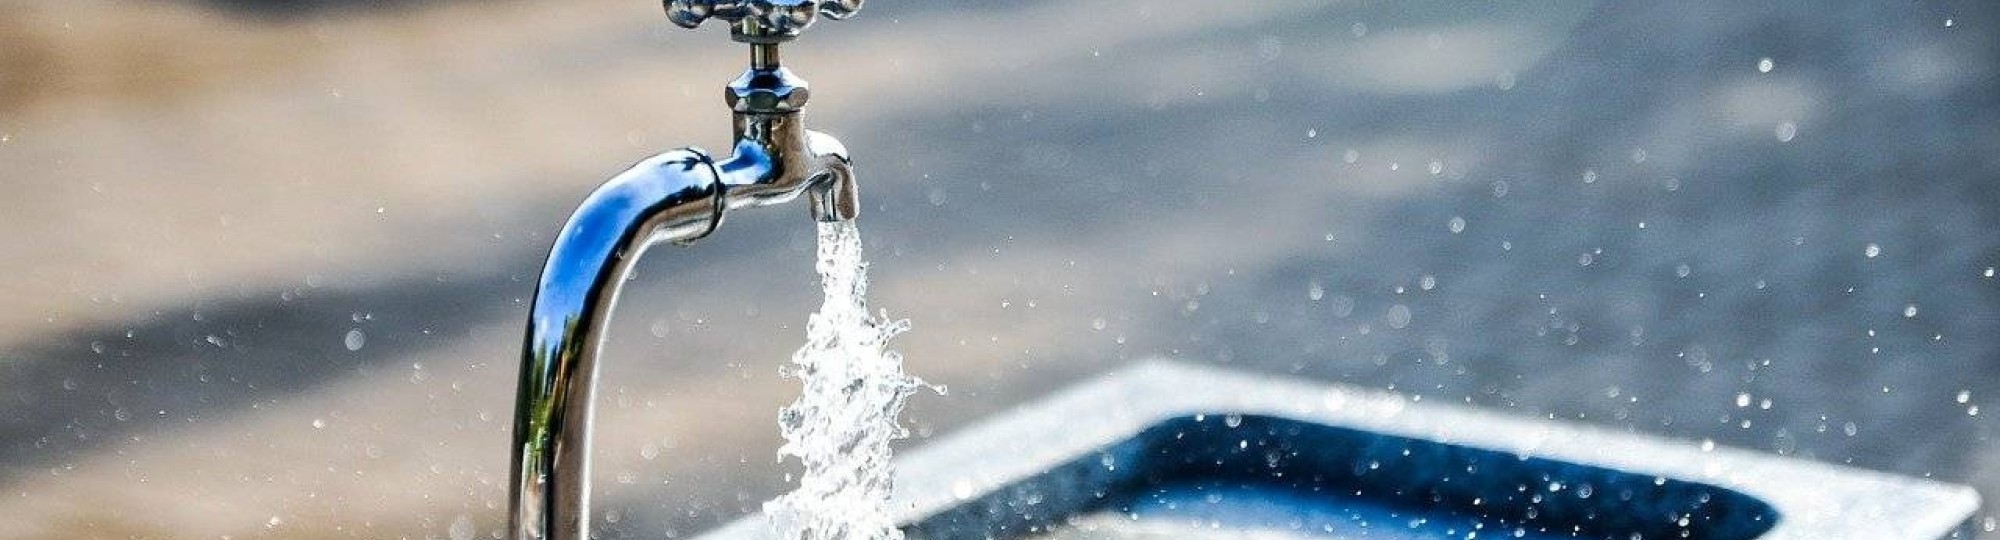 275162 Een kraan waar schoon drinkwater uitkomt. 23 maart is het Wereldwaterdag.